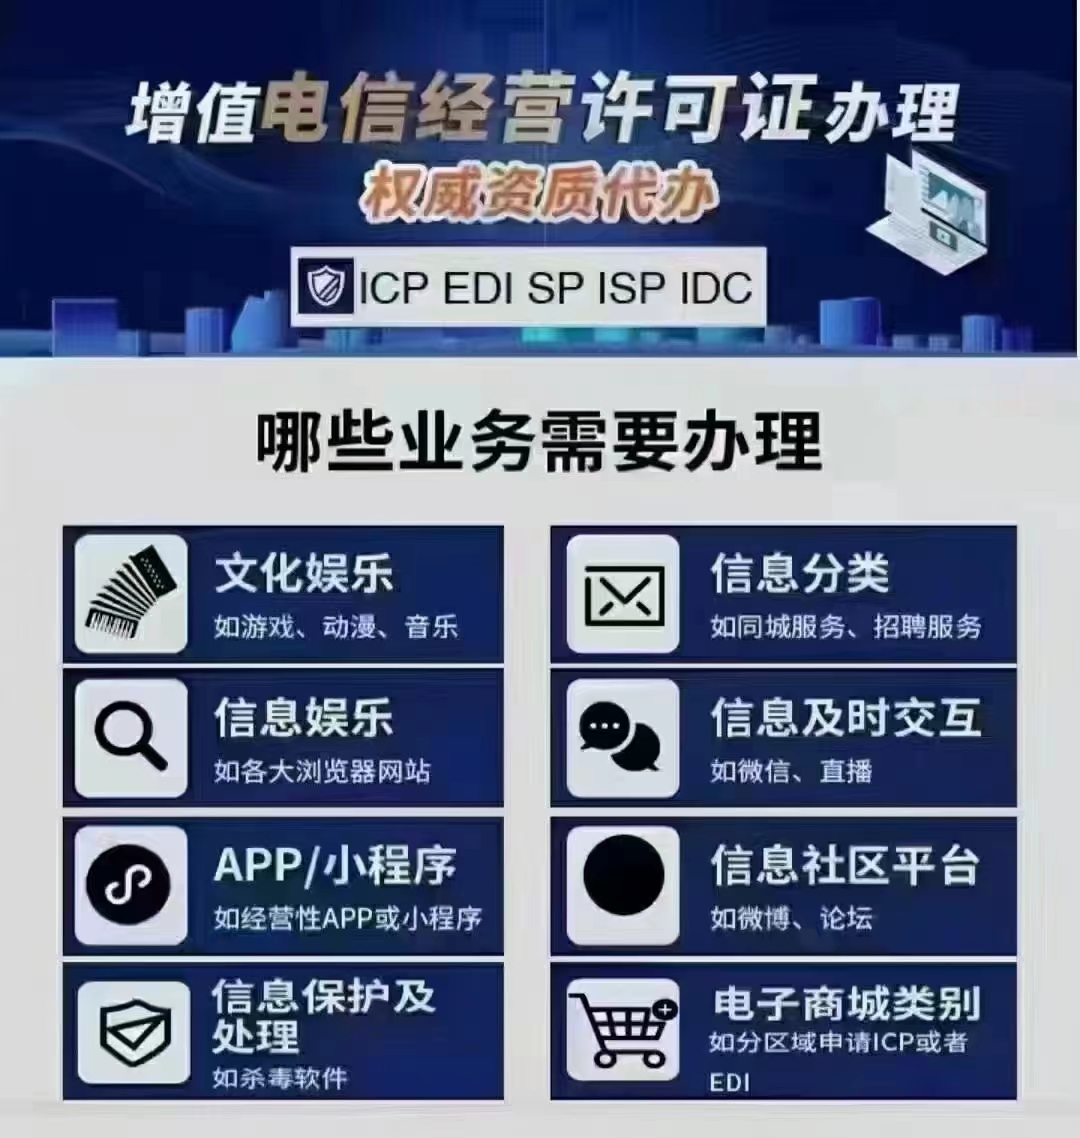 办理企业ICP许可证需要准备的相关材料北京市增值电信